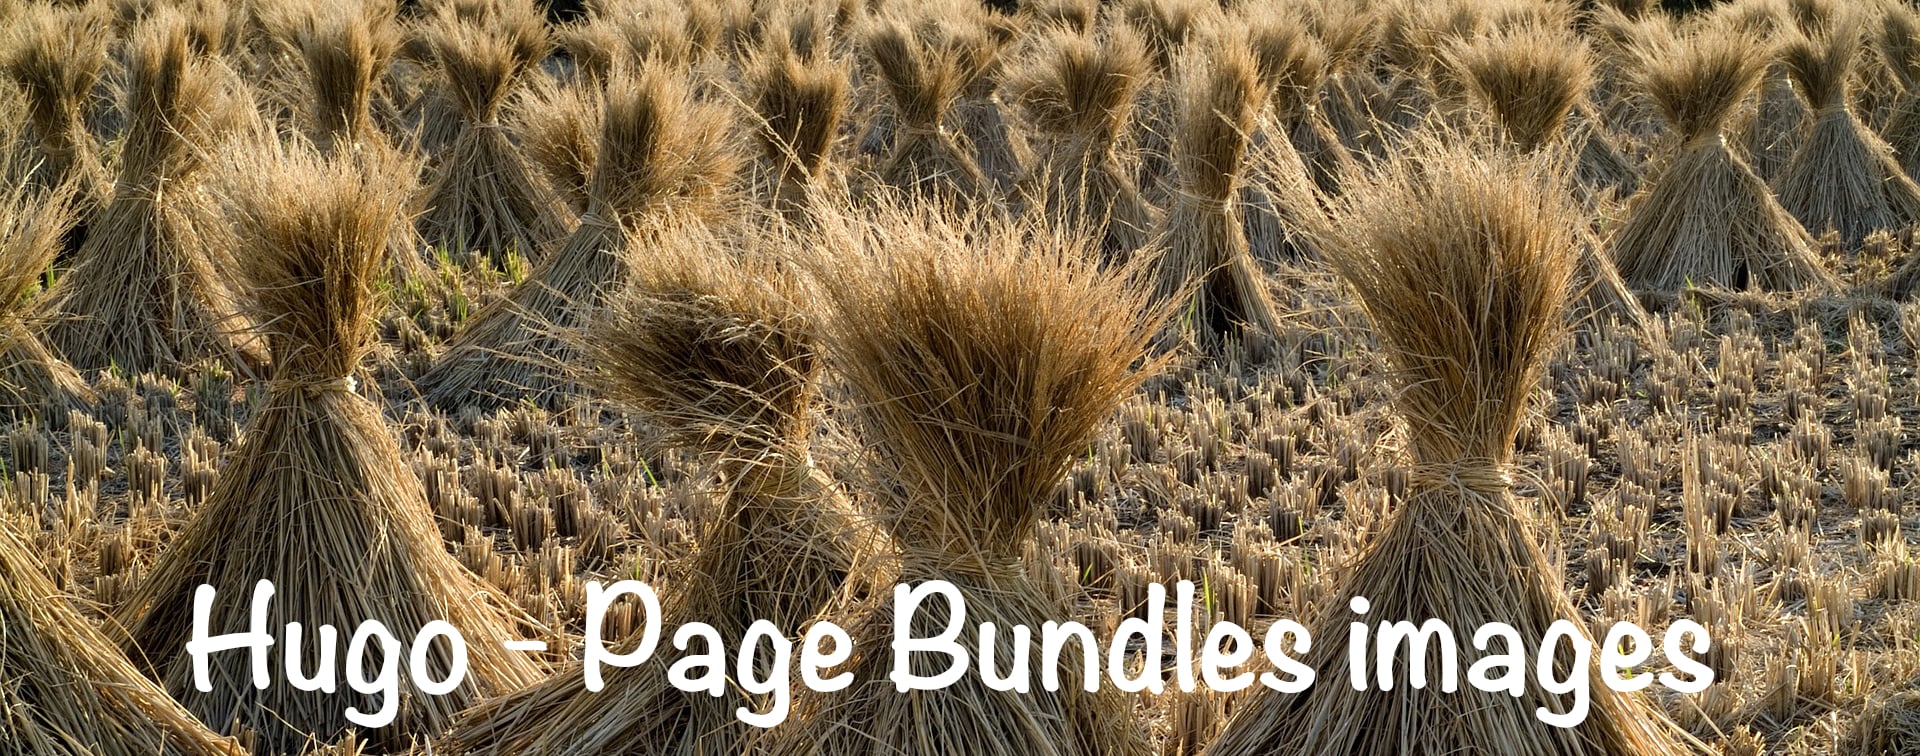 Page Bundles images